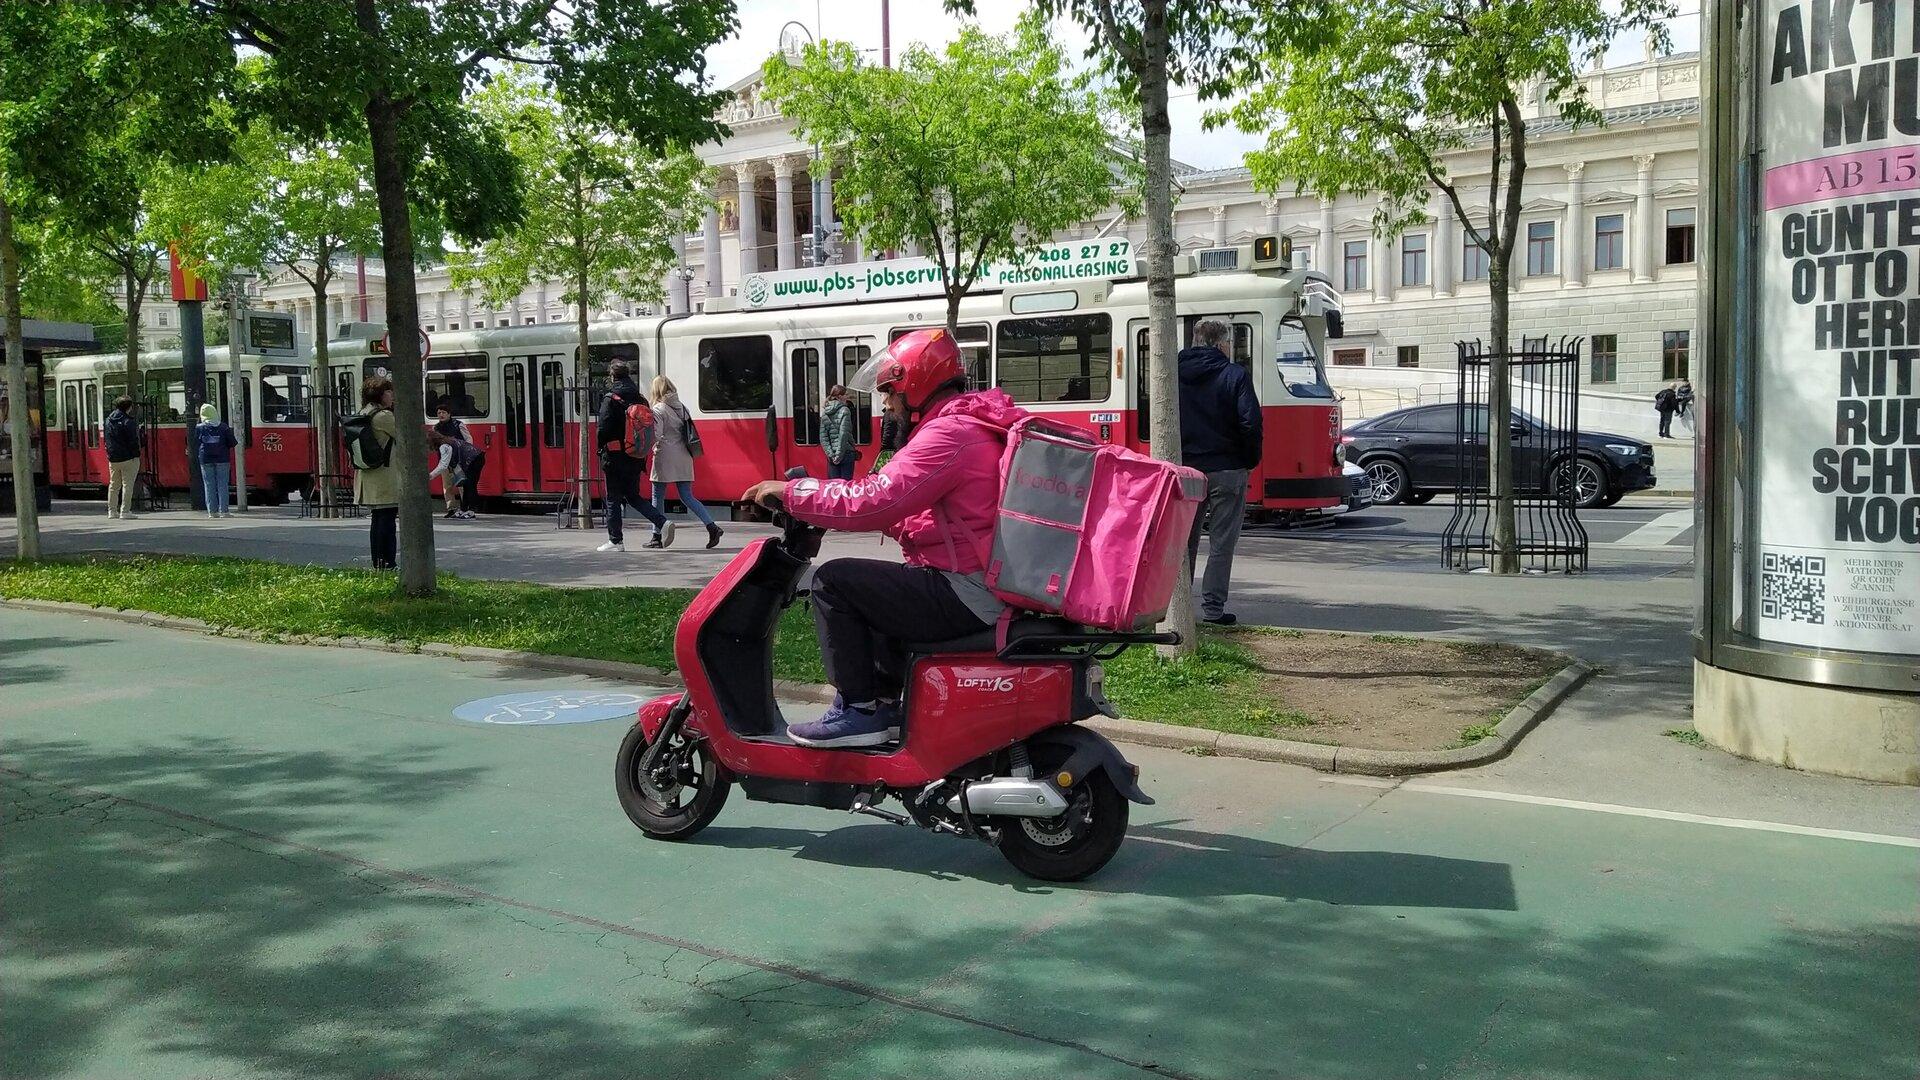 Wien fordert Tempobremse für Elektromopeds